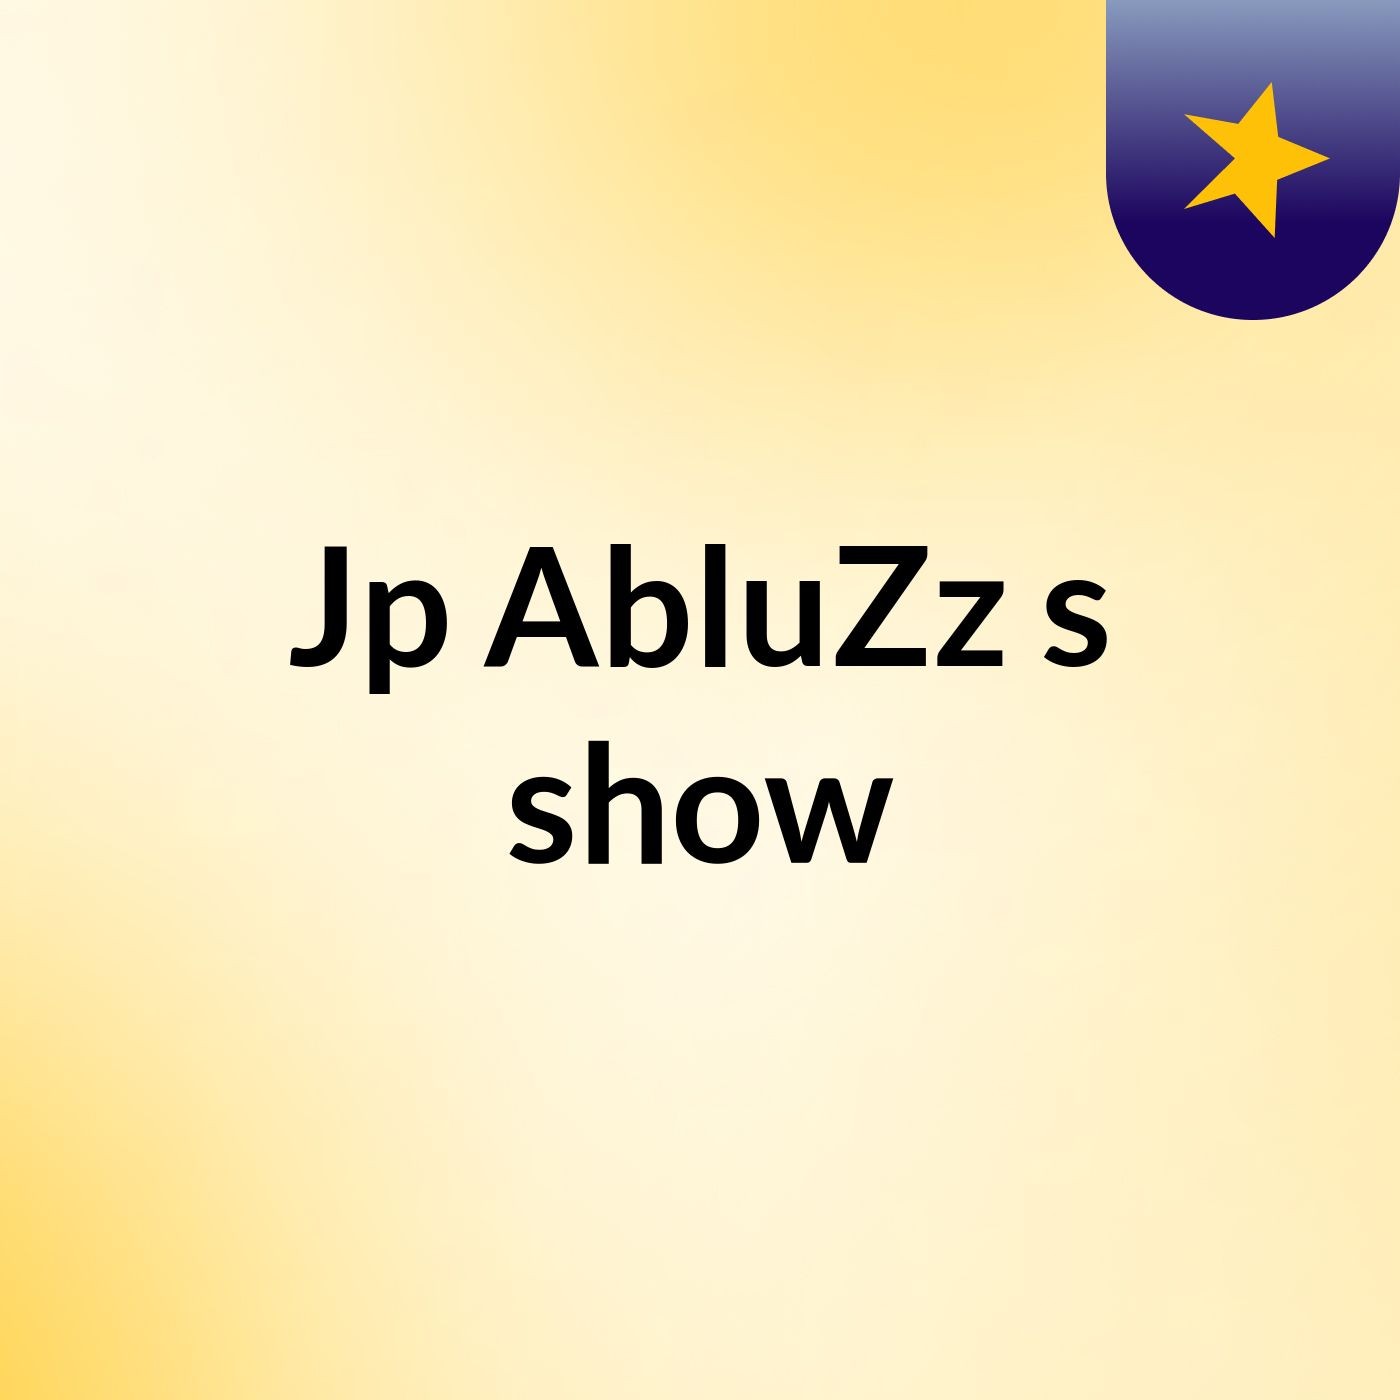 Jp AbluZz's show